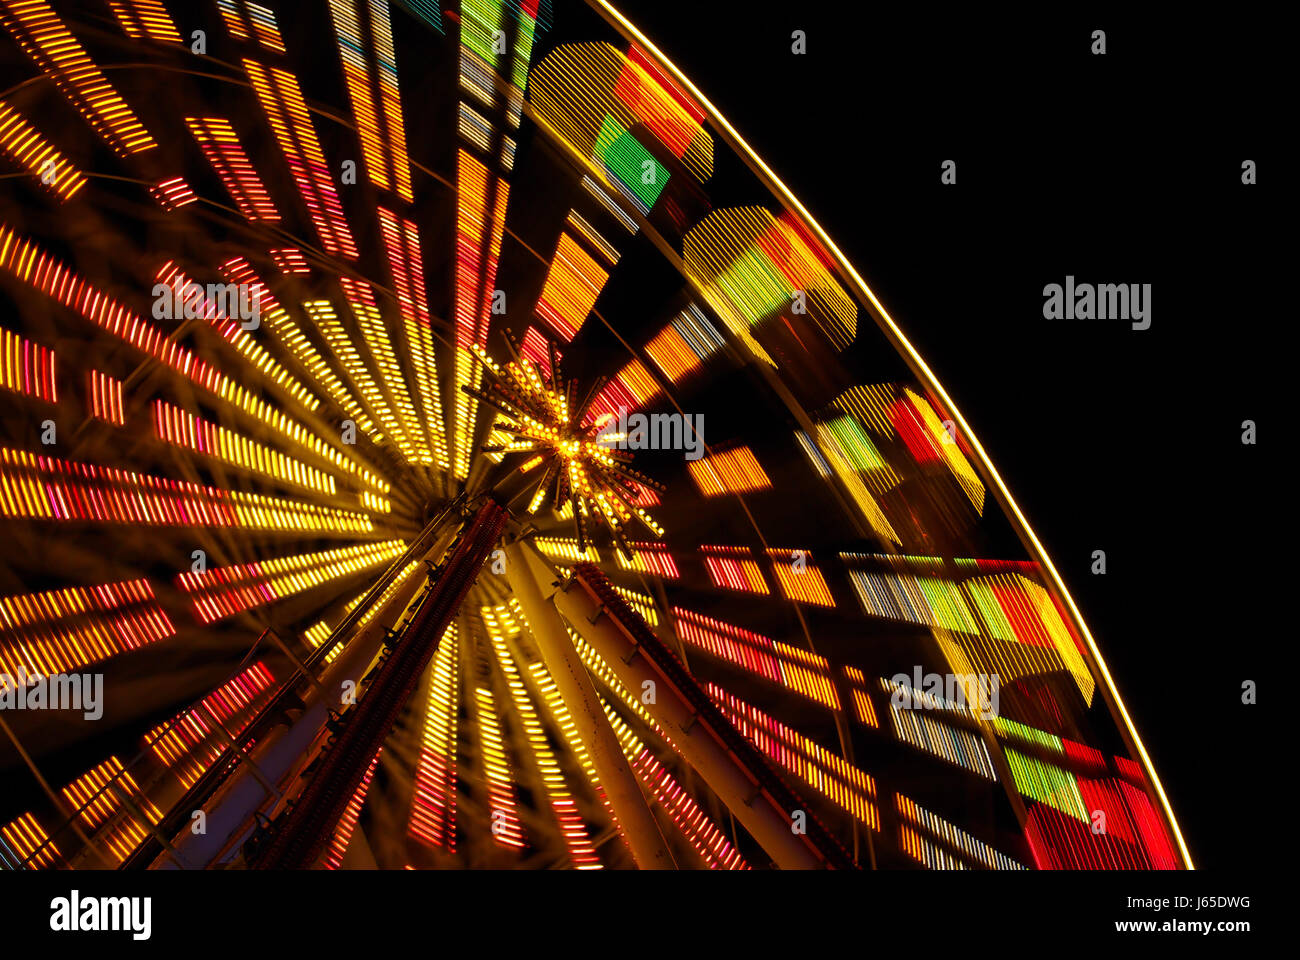 Fuss ruota Ferris Wheel ruota gigante mercato settimanale mercato Mercato delle pulci Foto Stock